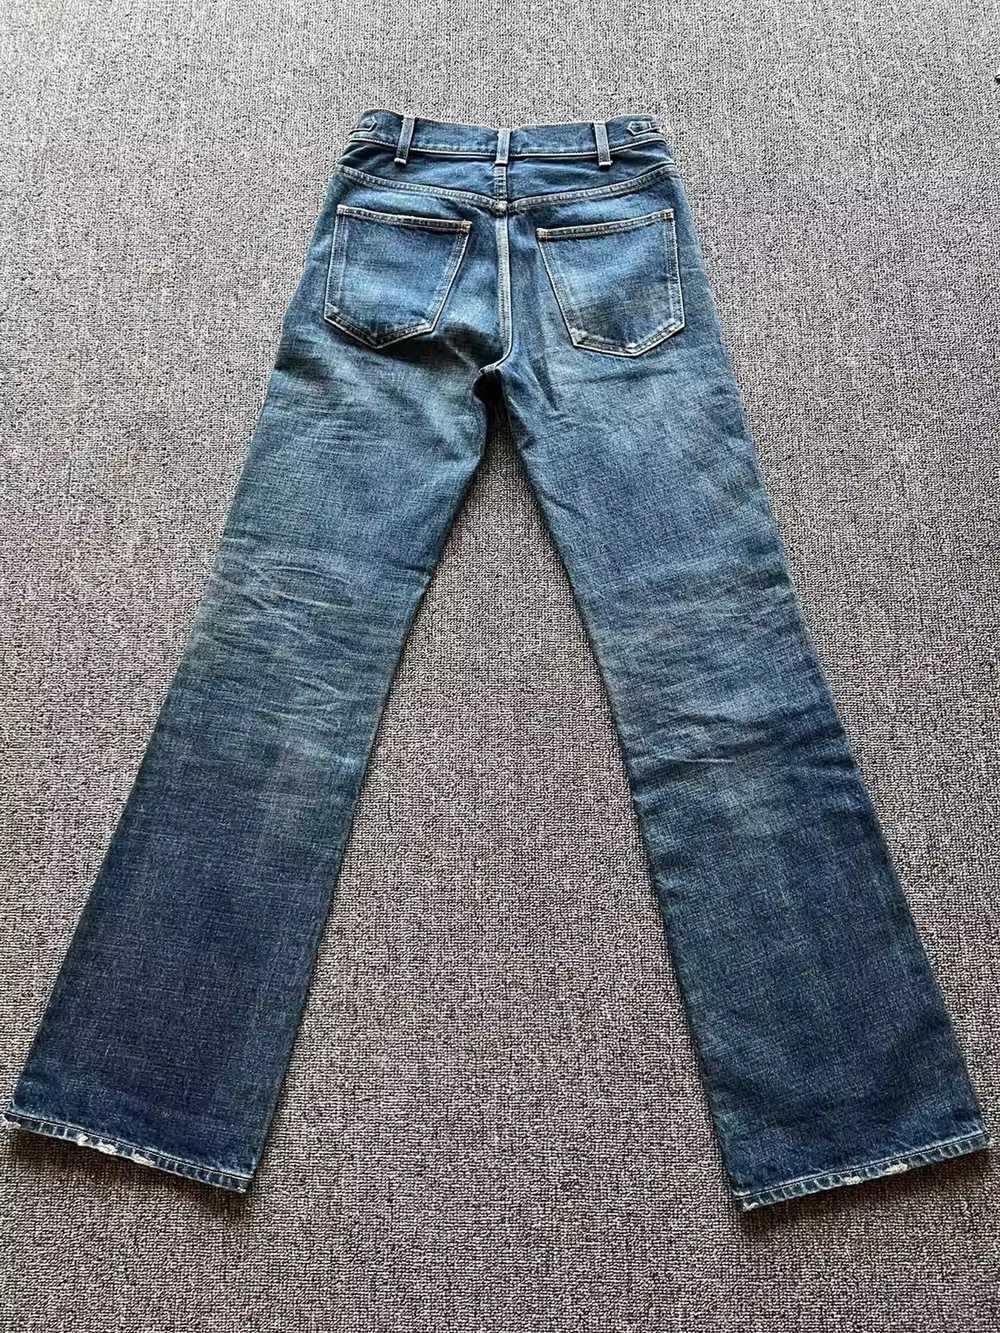 Celine celine flared jeans - image 2